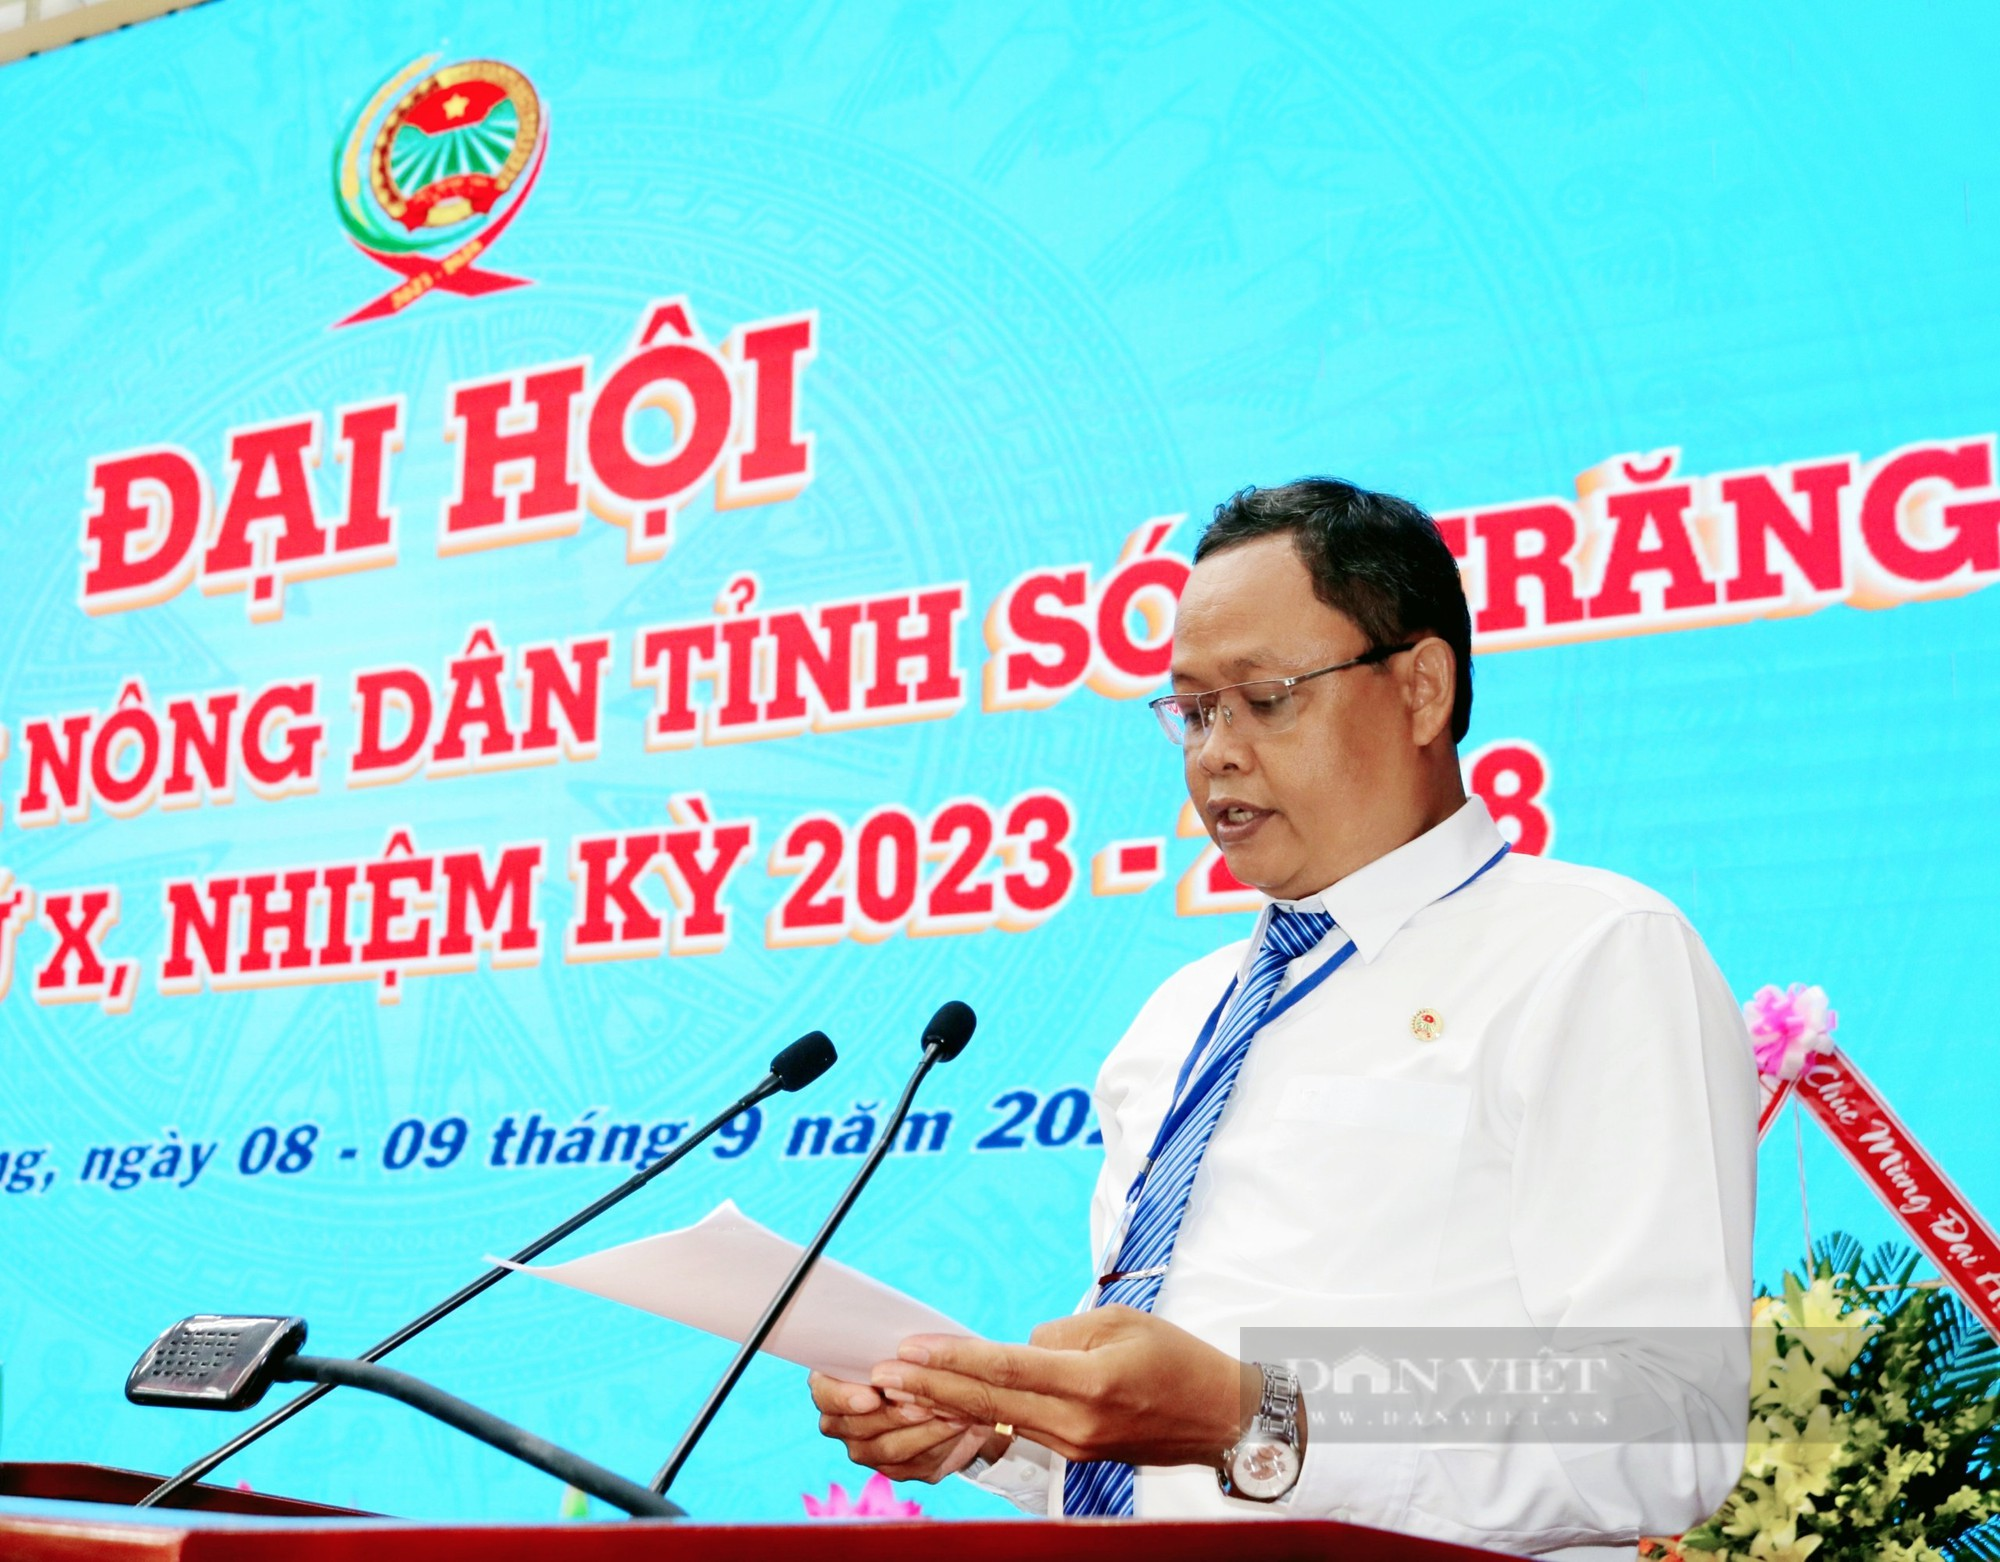  246 đại biểu tiêu biểu dự Đại hội Hội Nông dân tỉnh Sóc Trăng khóa X, nhiệm kỳ 2023 - 2028 - Ảnh 3.